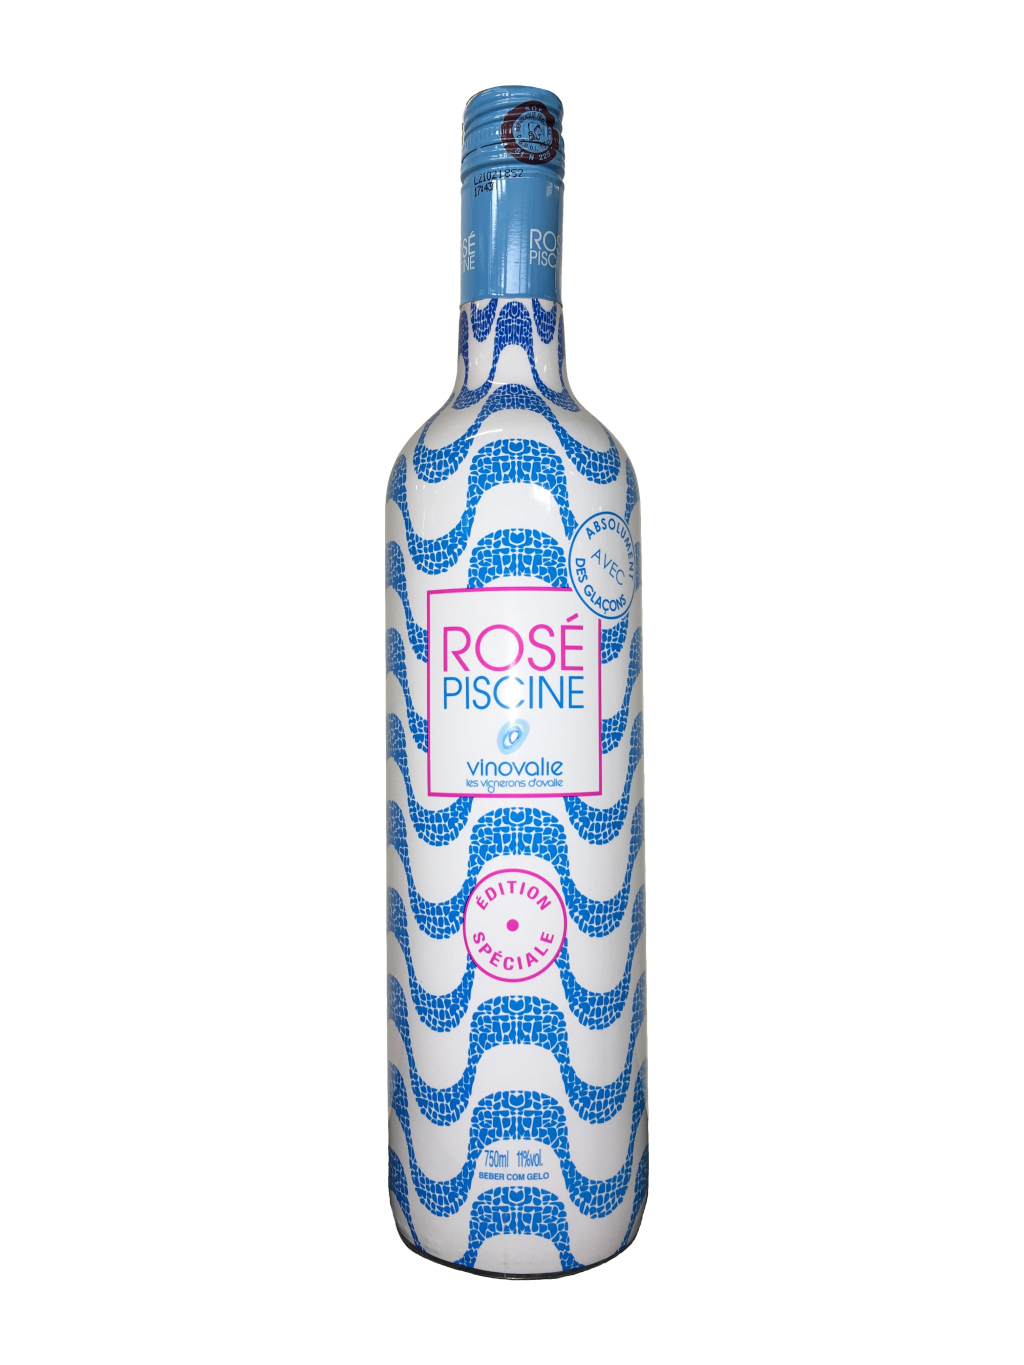 Rosé Piscine, o vinho mais vendido do país, vem até com iPhone 12